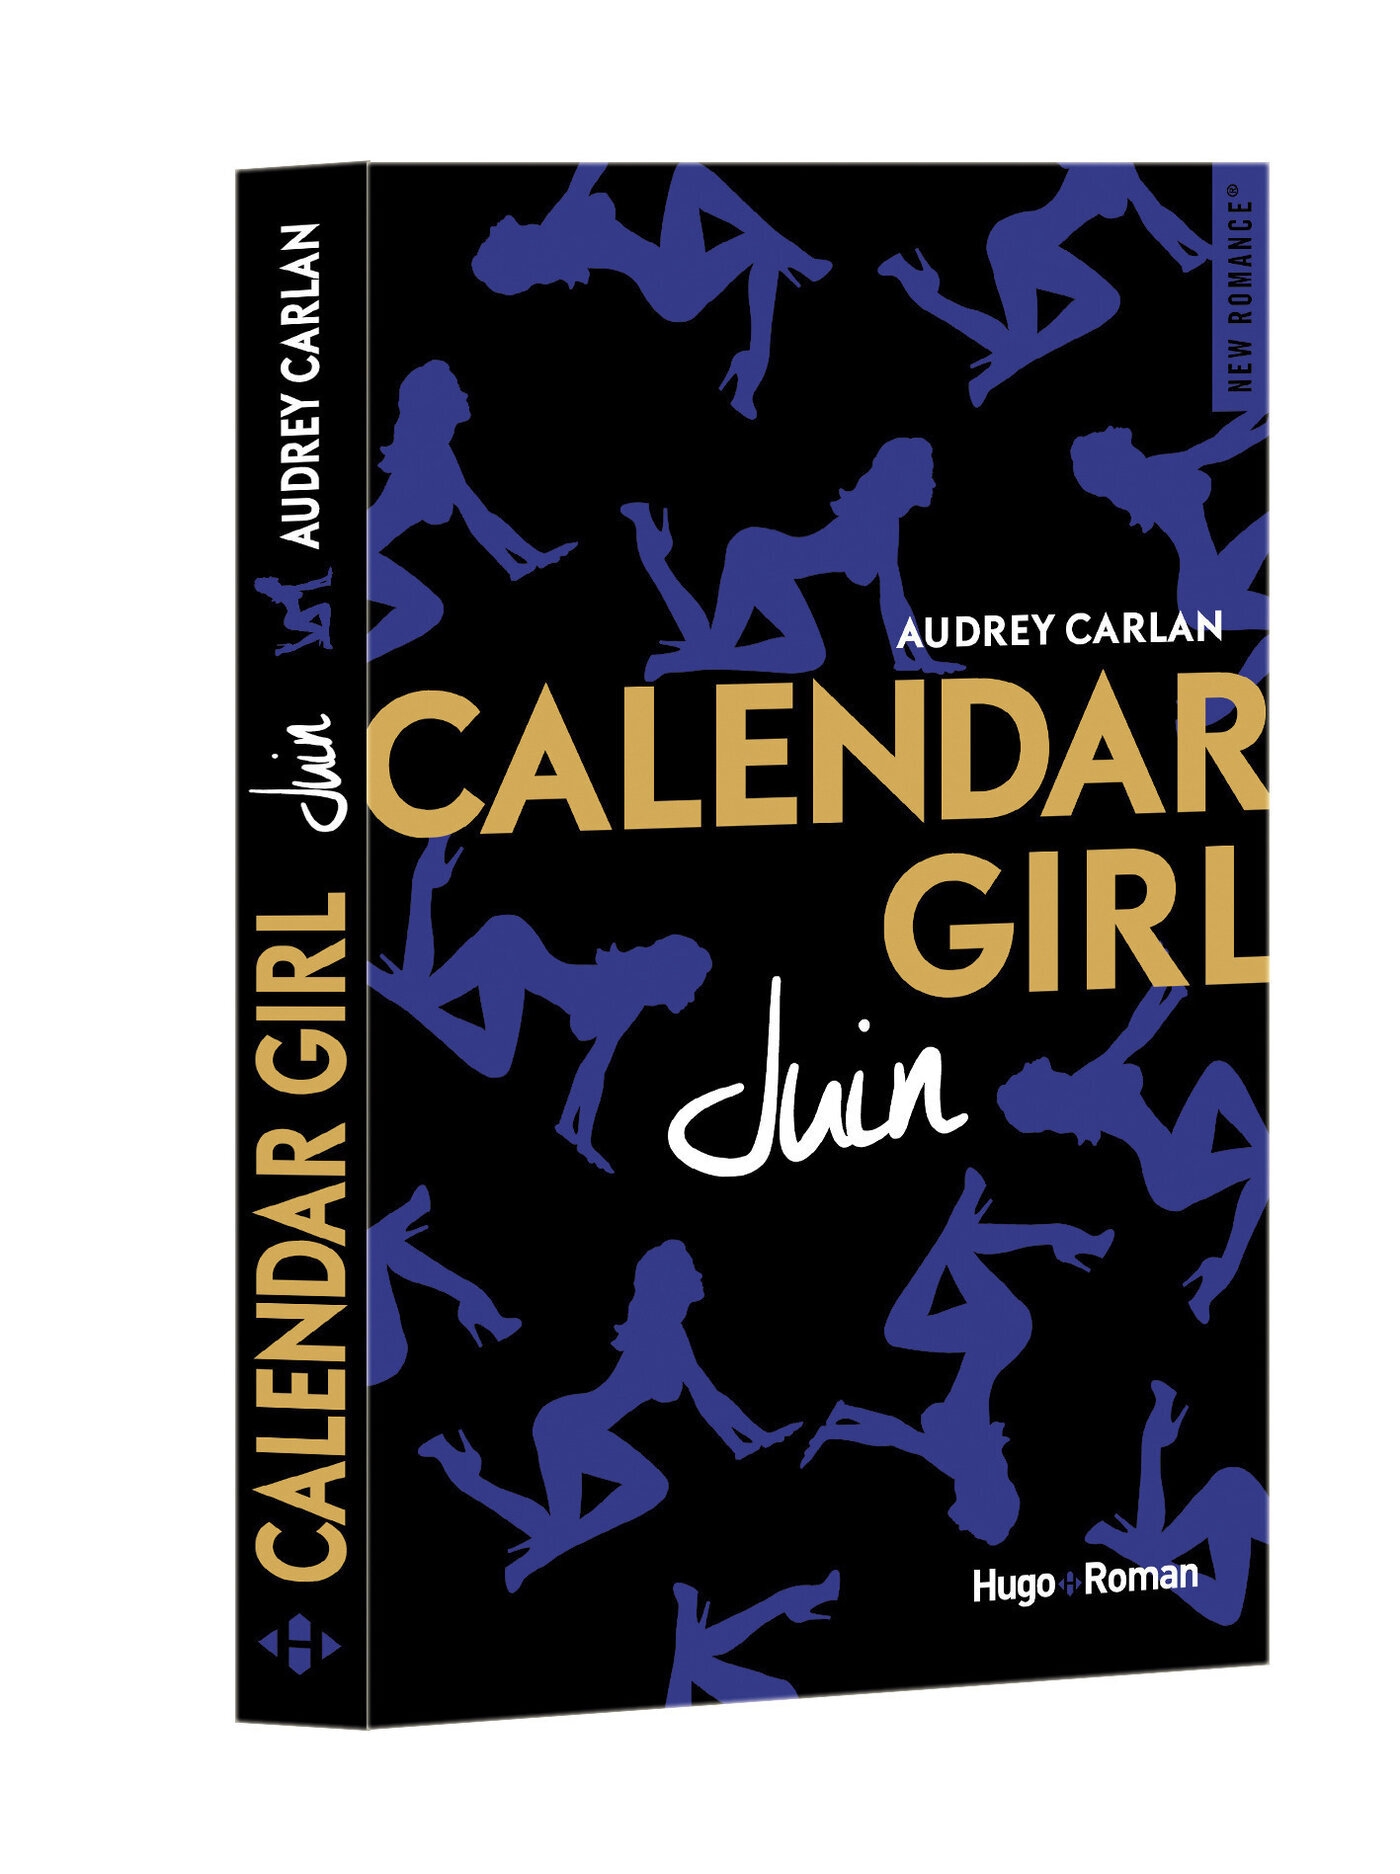 Résultat de recherche d'images pour "calendar girl juin"